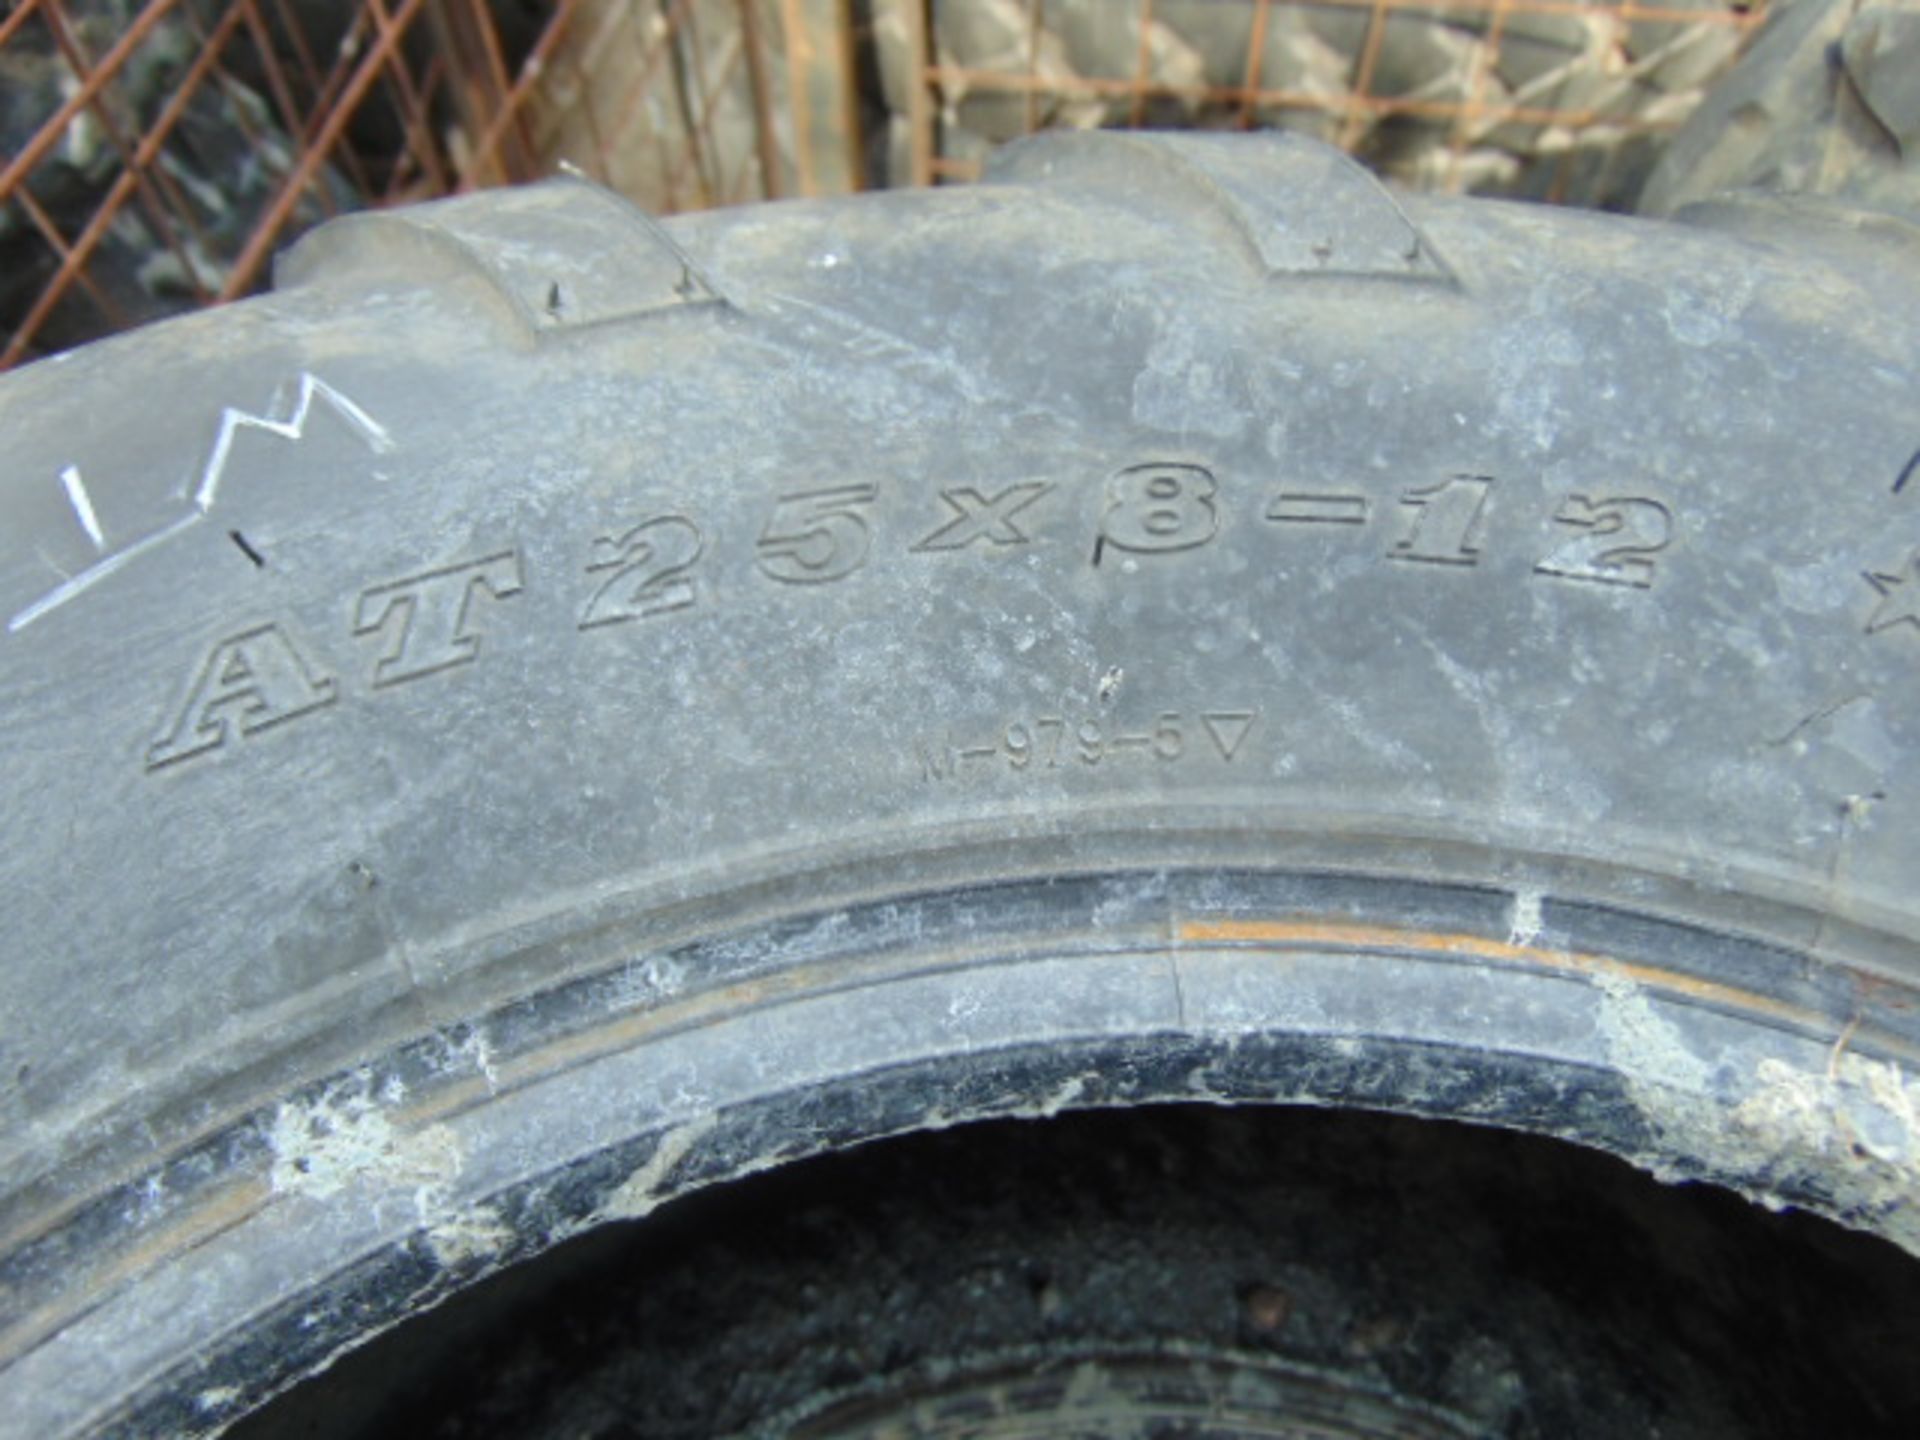 10 x Maxxis 25x8-12 ATV Tyres - Image 5 of 5